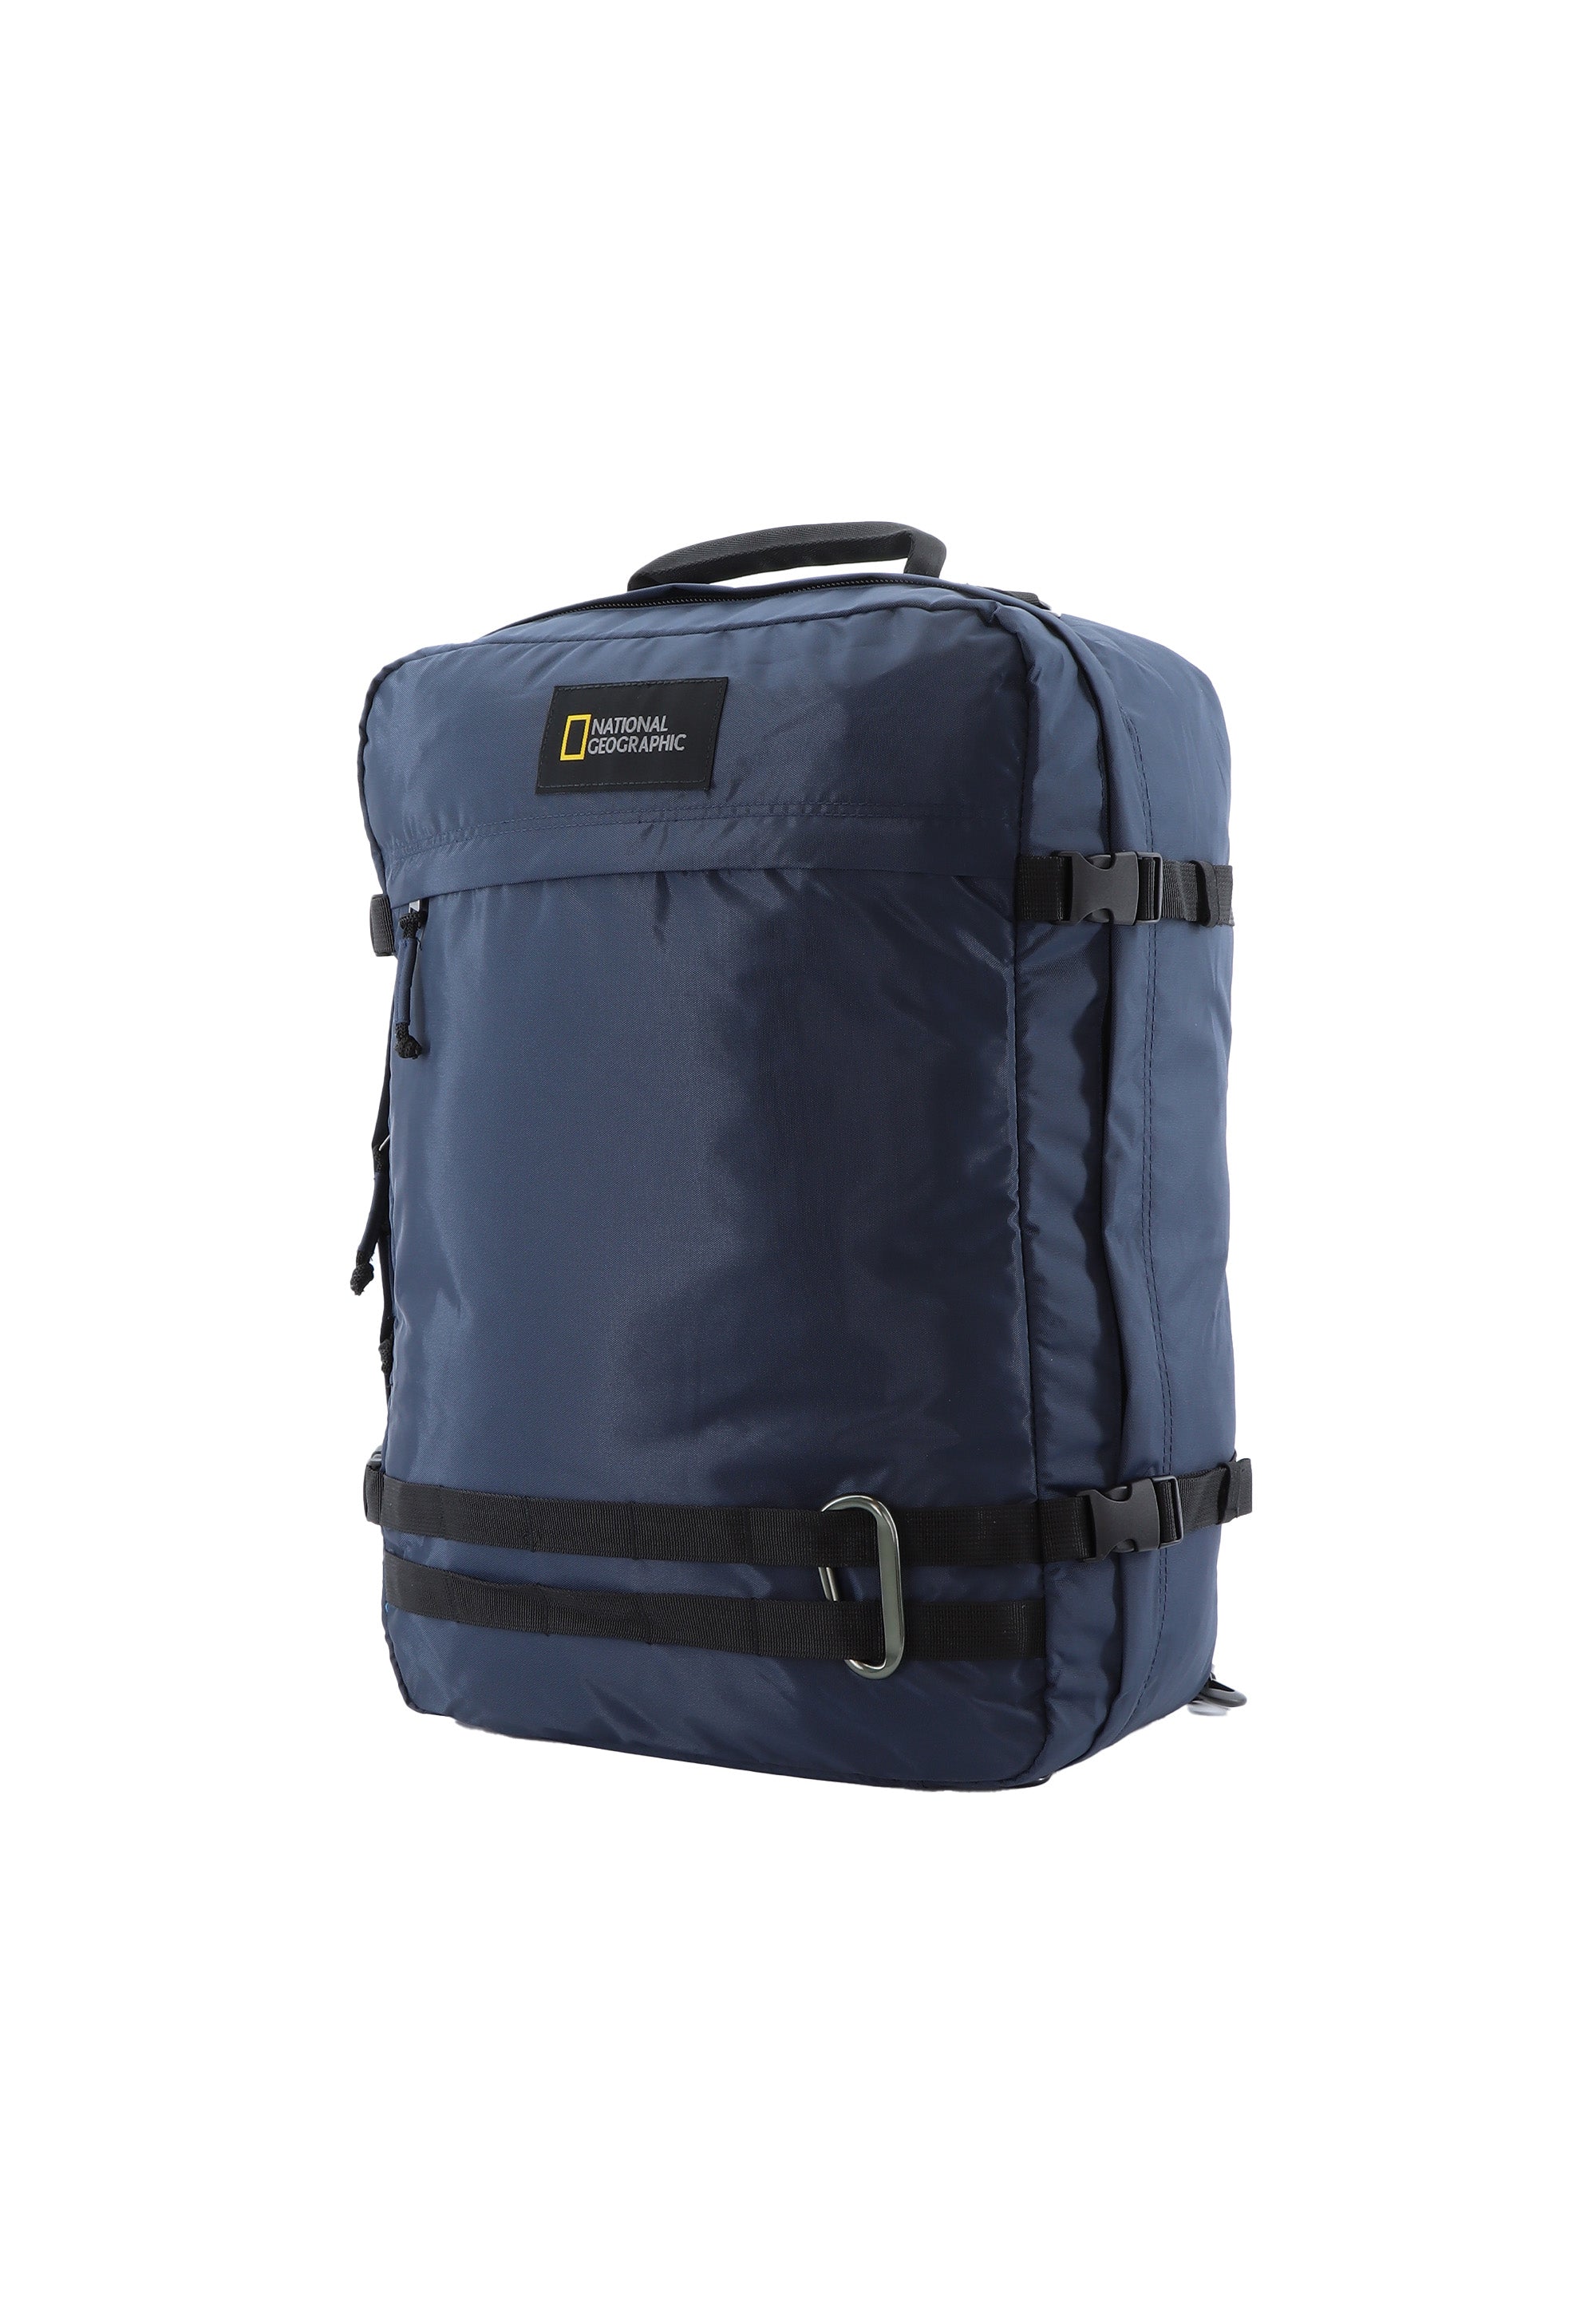 National Geographic - Hybrid | Rucksack-Tasche mit 3 Funktionen | Navy